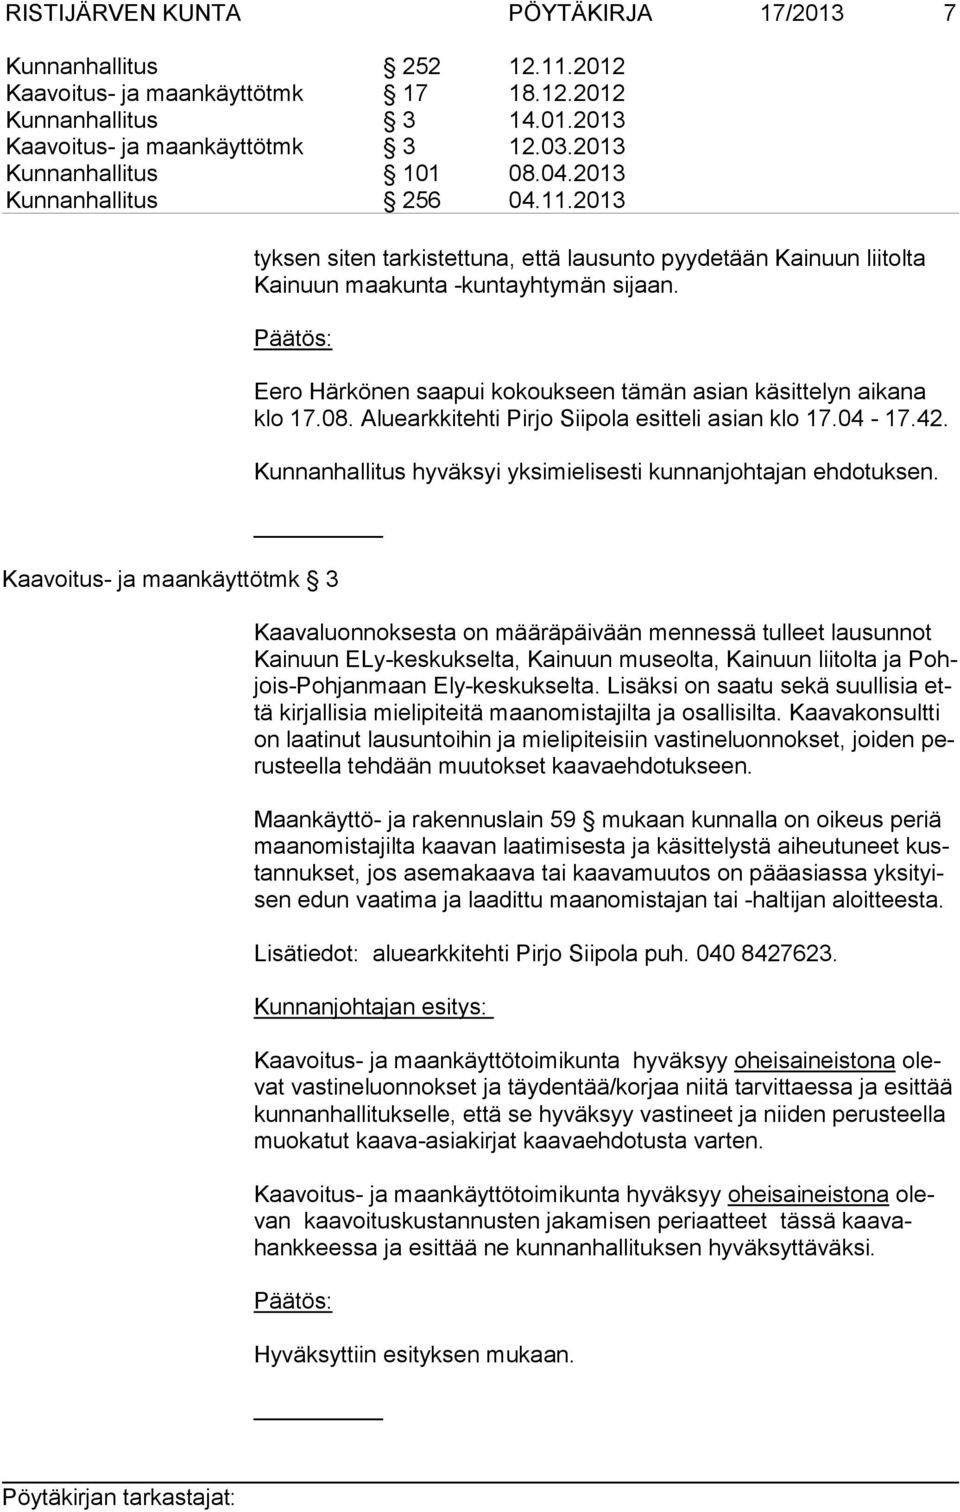 Eero Härkönen saapui kokoukseen tämän asian käsittelyn aikana klo 17.08. Aluearkkitehti Pirjo Siipola esitteli asian klo 17.04-17.42. Kunnanhallitus hyväksyi yksimielisesti kunnanjohtajan ehdotuksen.